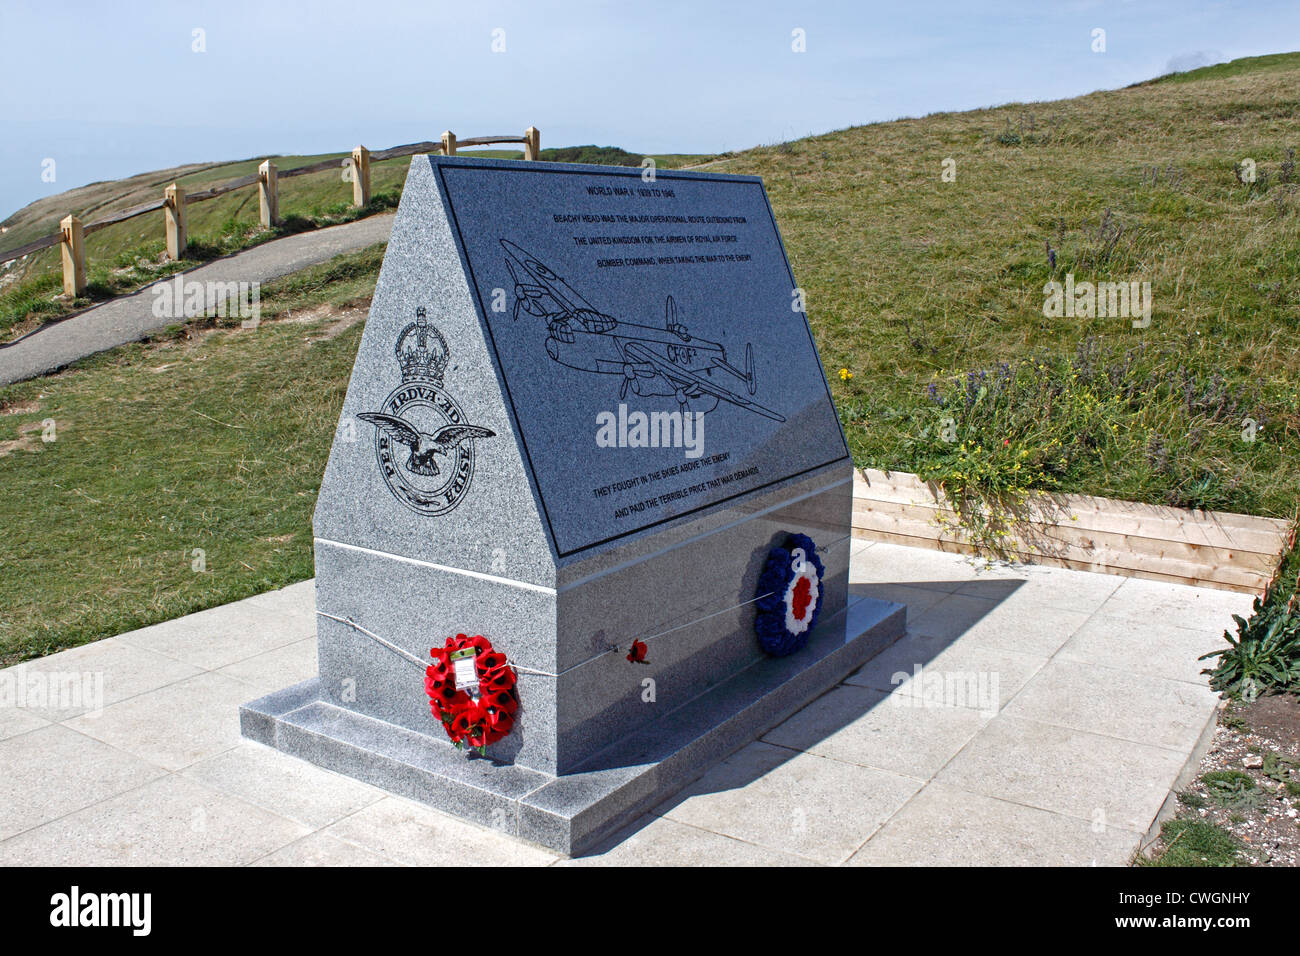 La RAF Bomber Command Memorial en Beachy Head. EAST SUSSEX, REINO UNIDO. Foto de stock